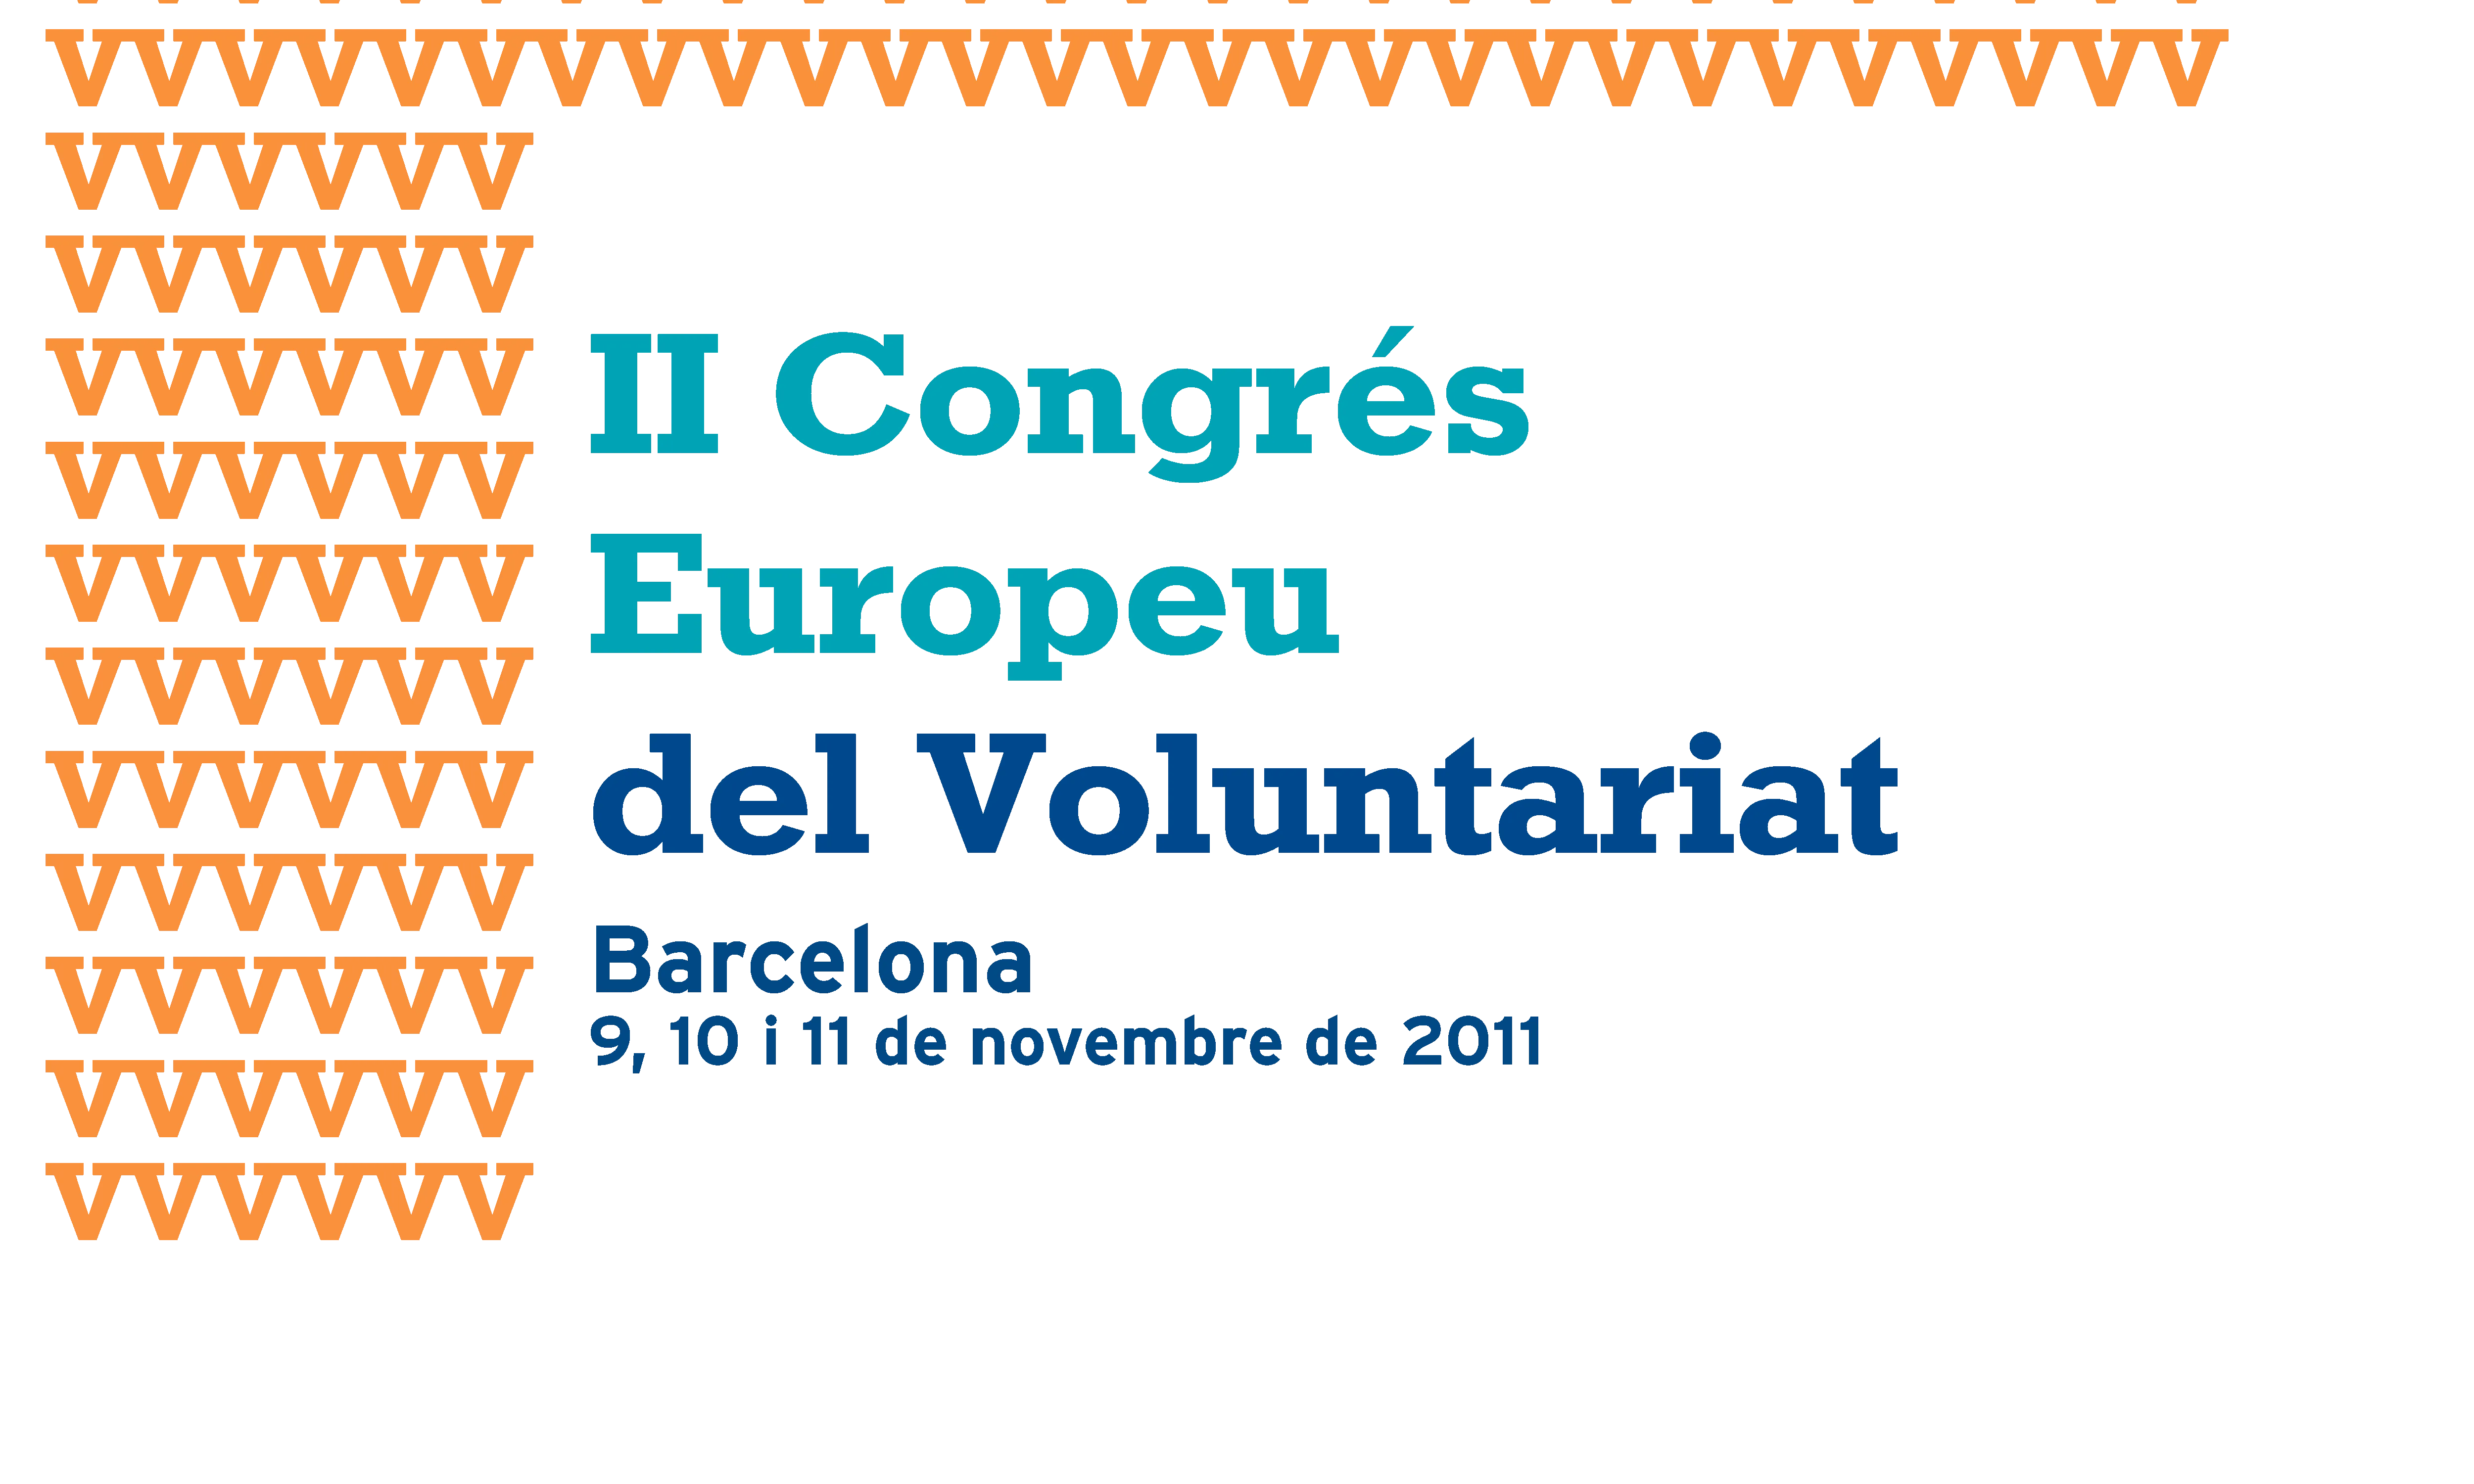 II Congrés Europeu del Voluntariat